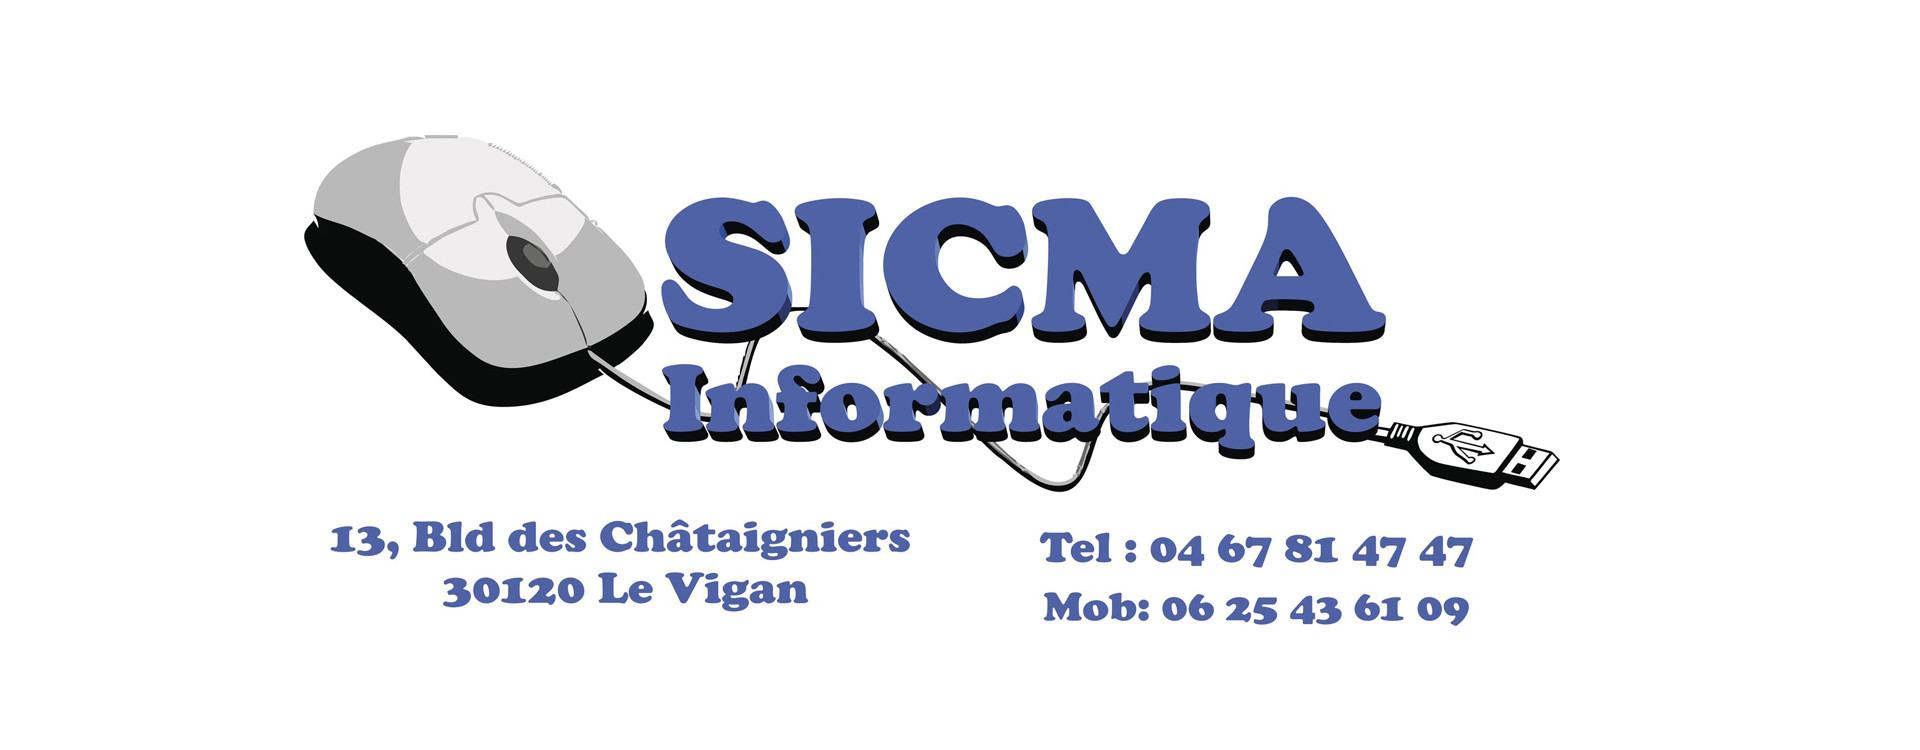 Boutique SICMA INFORMATIQUE - Pays Viganais